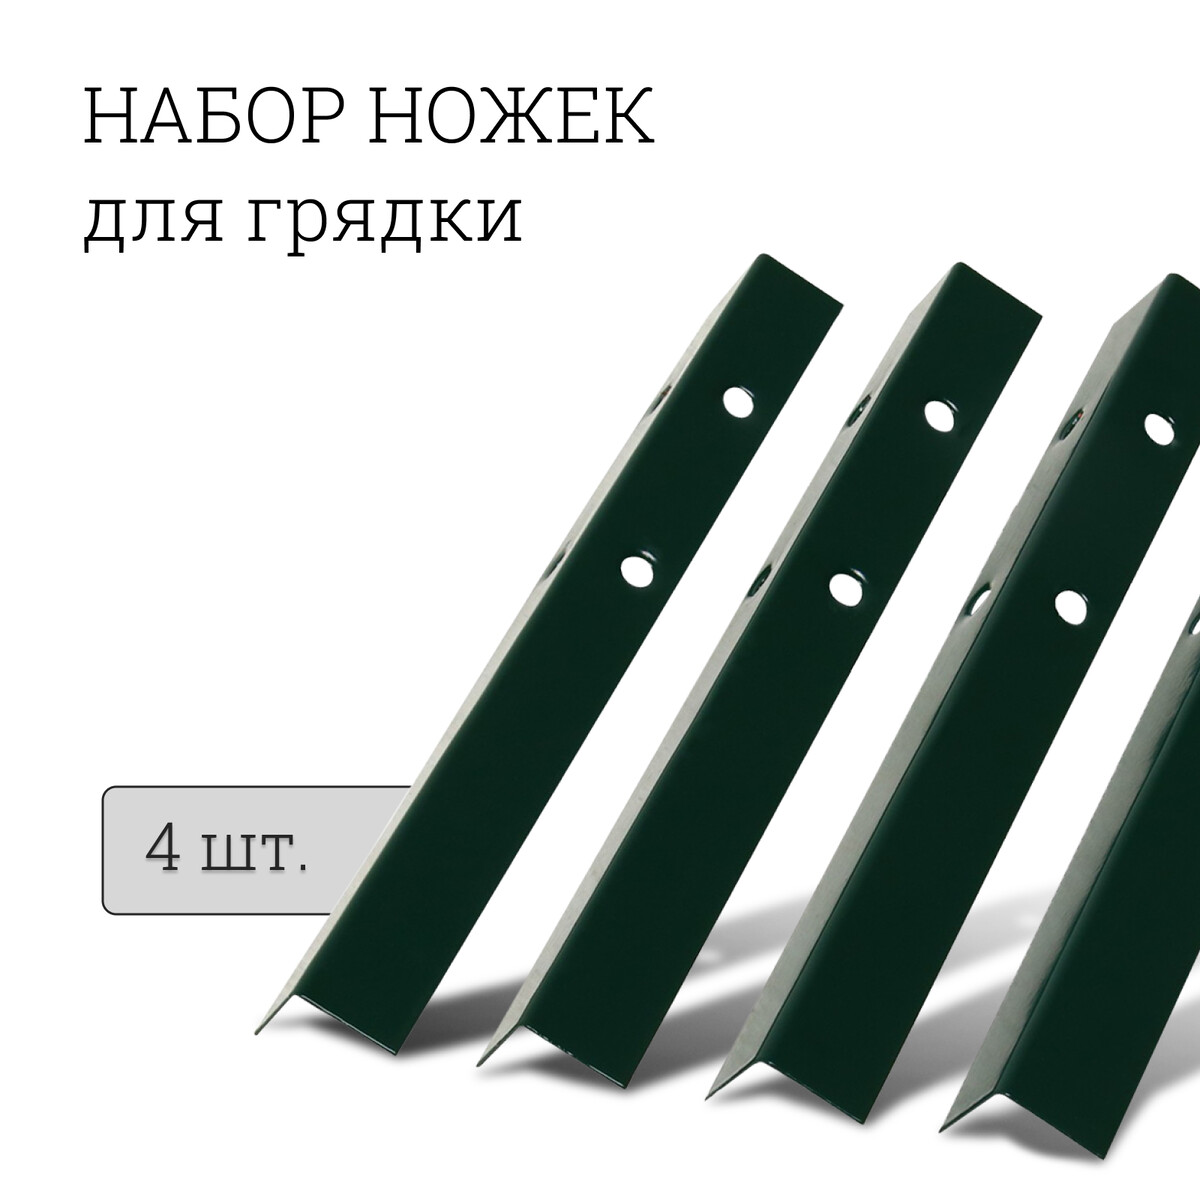 Набор ножек для грядки, 4 шт., зеленые, greengo